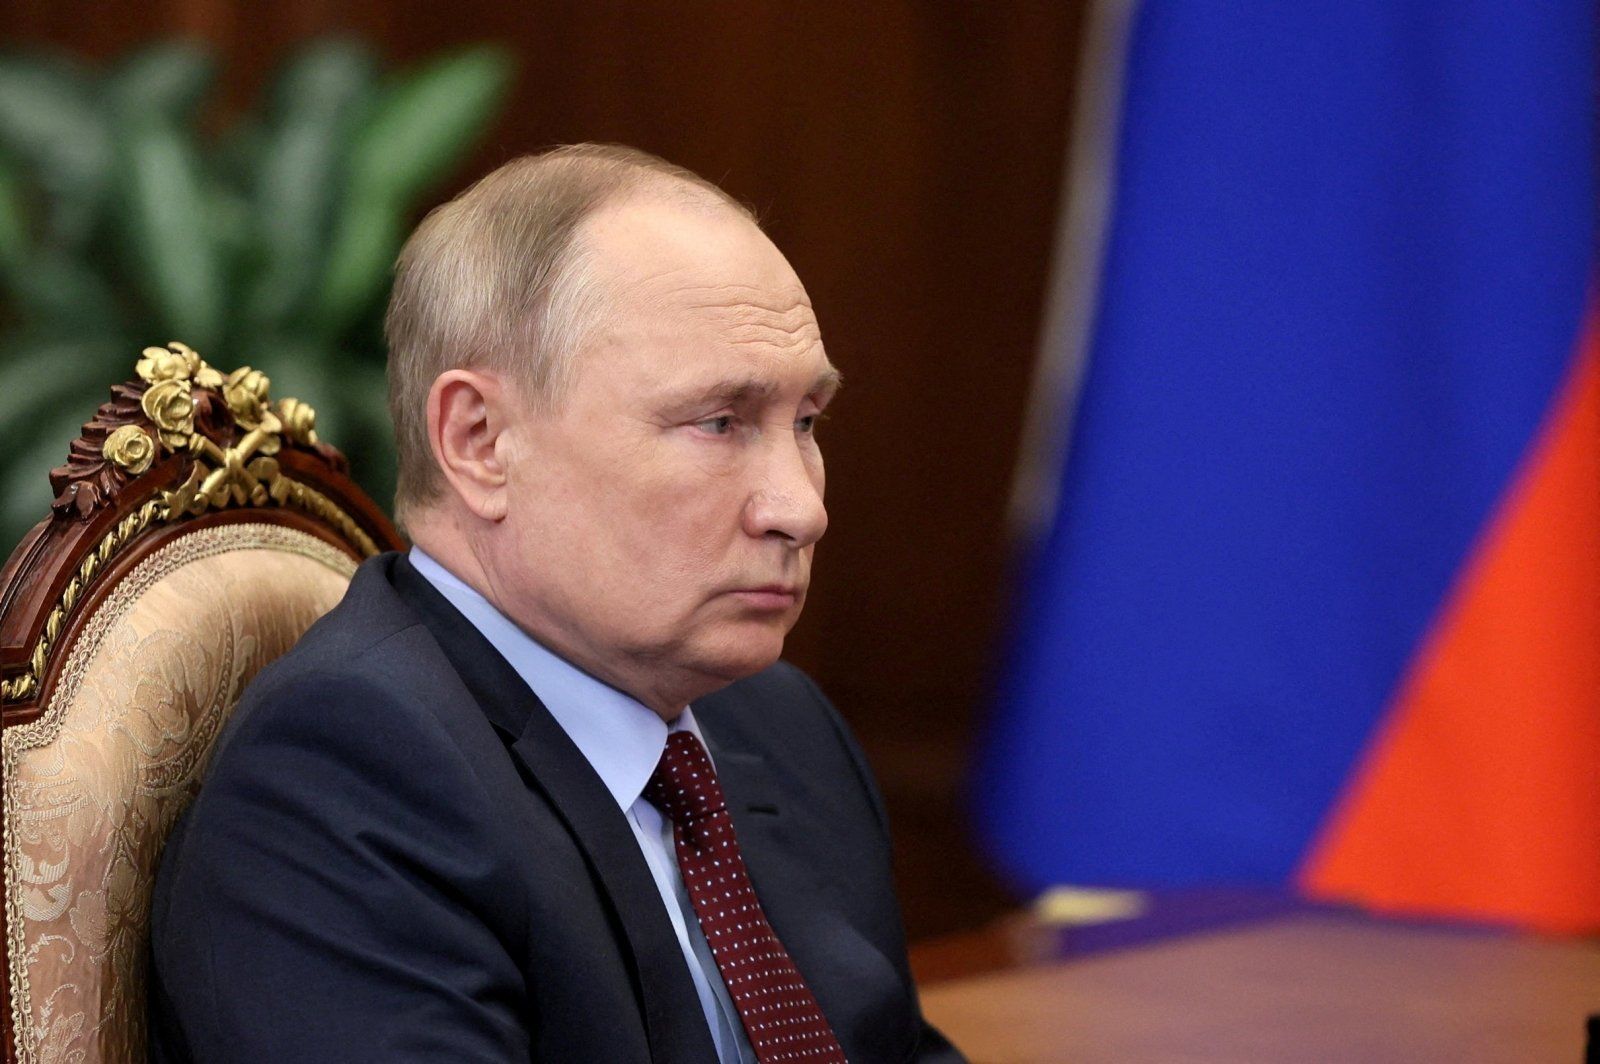 "Европу больше не интересует диалог с РФ", - эксперт о "нетипичных движениях" в Кремле